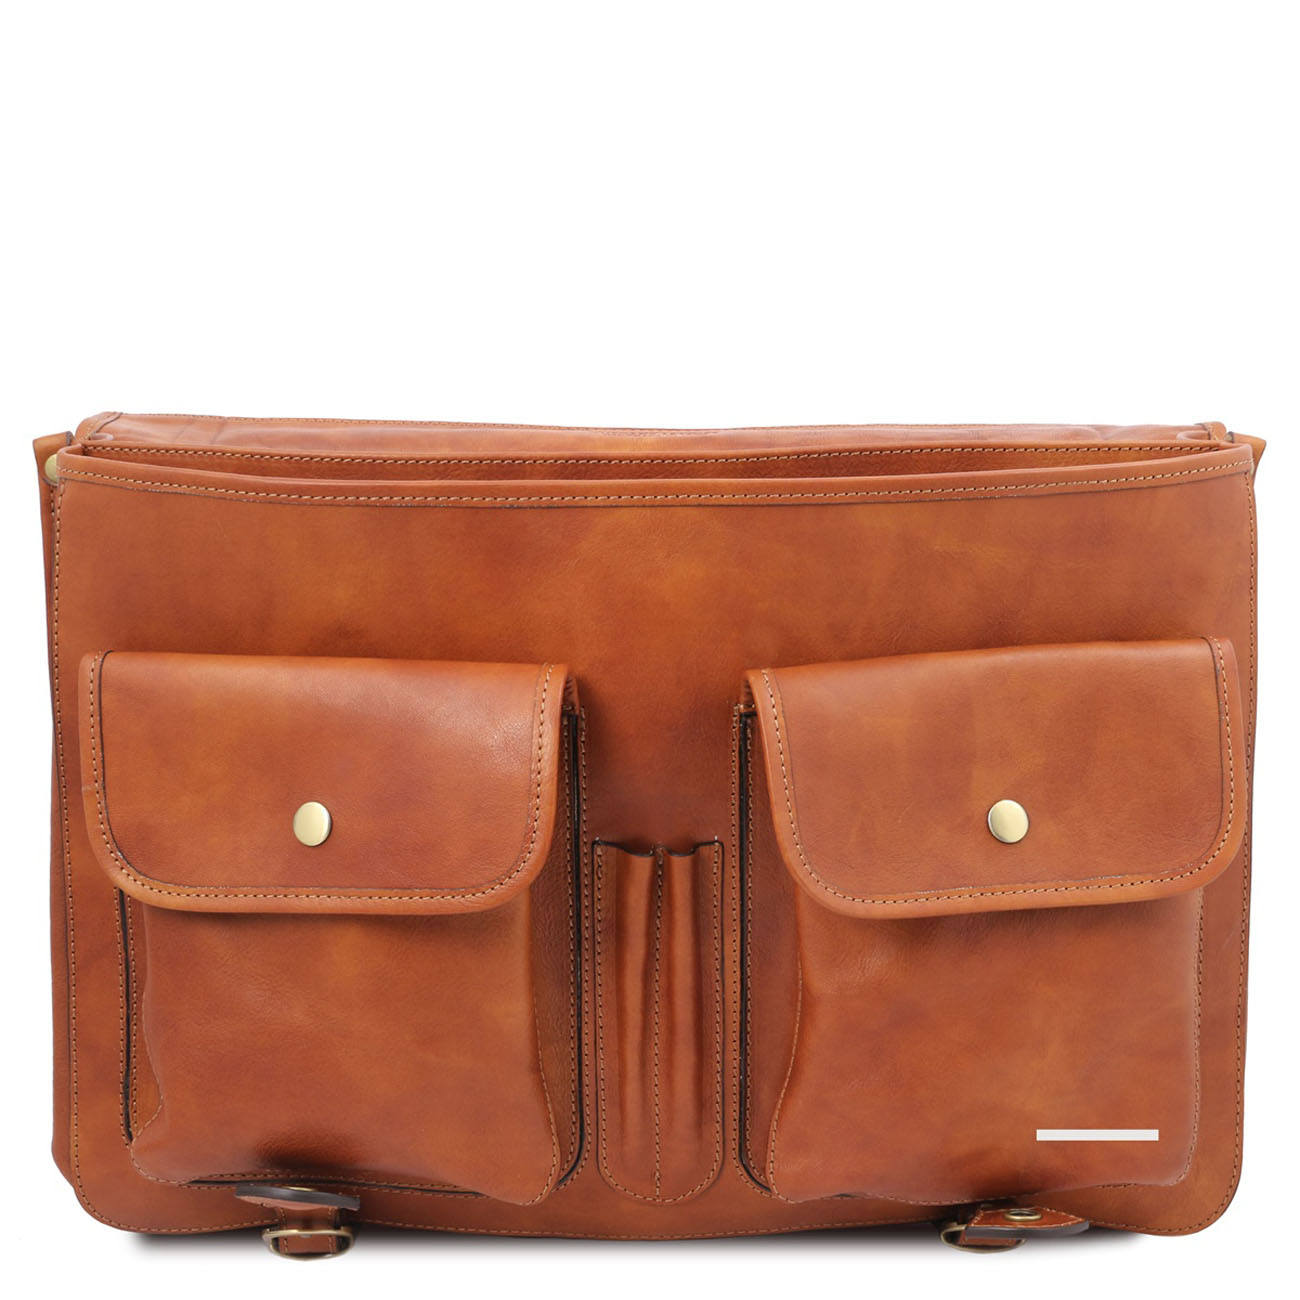 olasz táska akta táska üzleti táska webáruház webshop Tuscany Leather